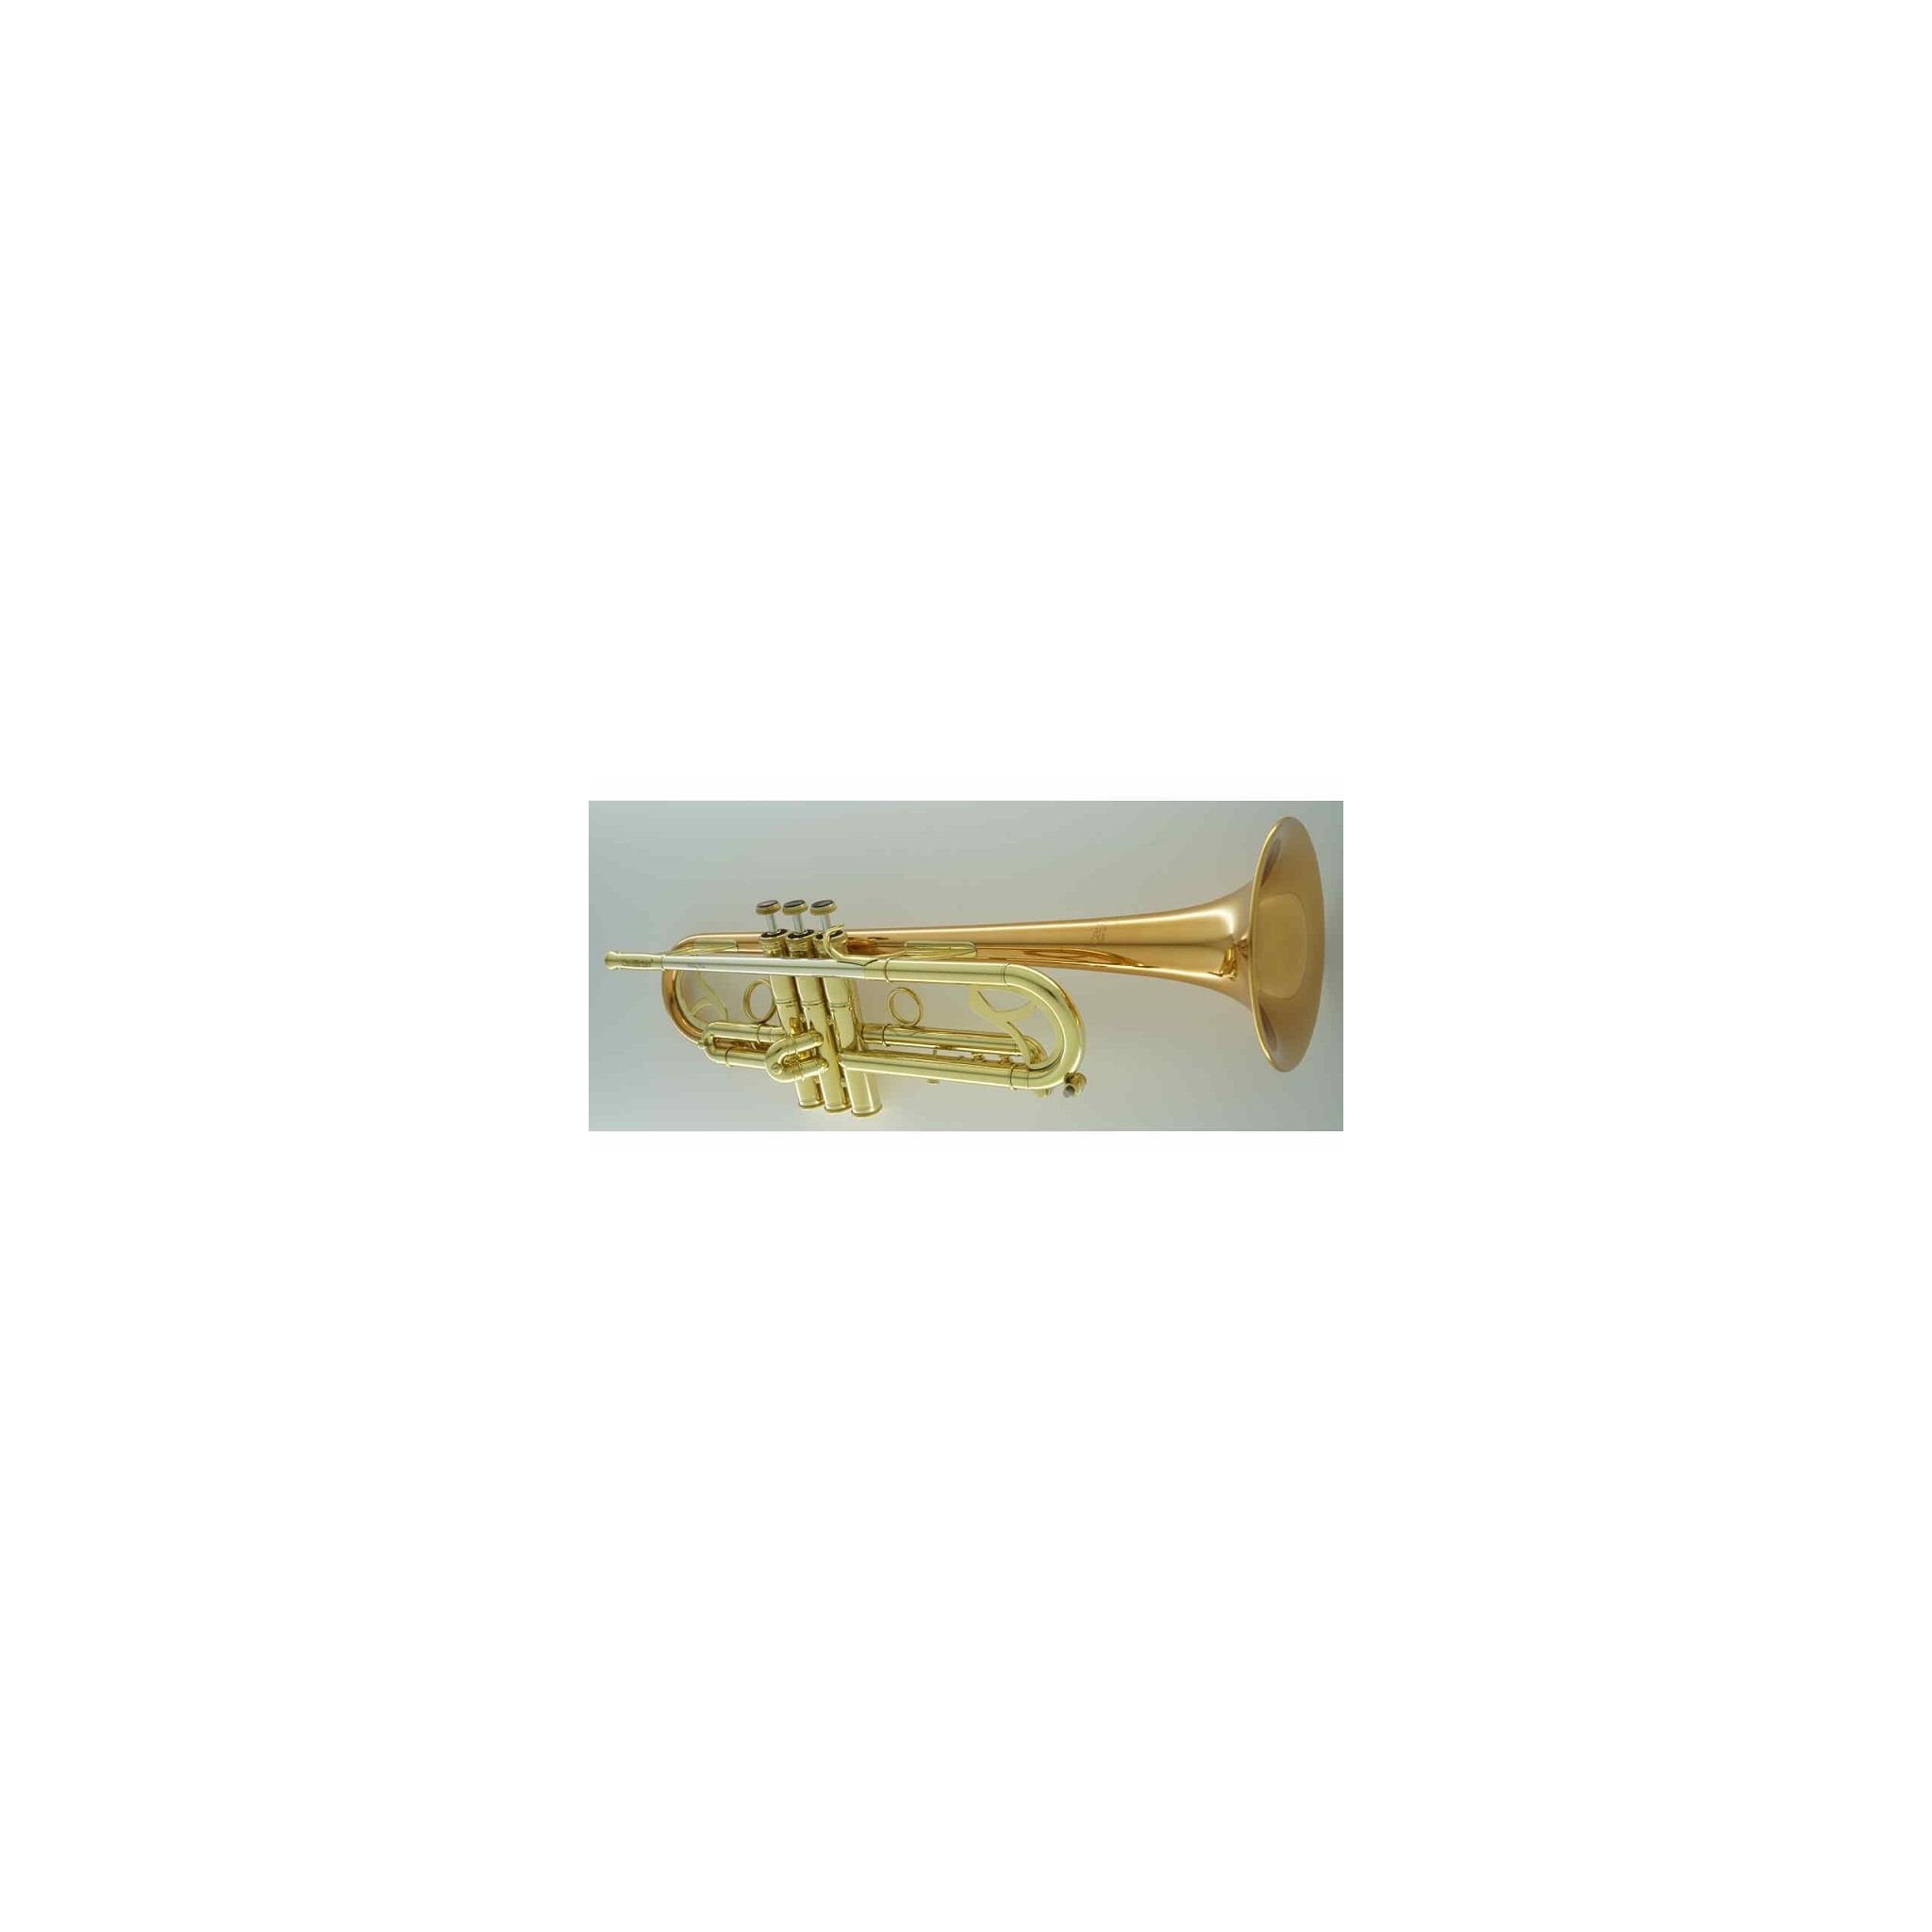 Trumpet Carol Brass CTR-7065L-RLM-Bb